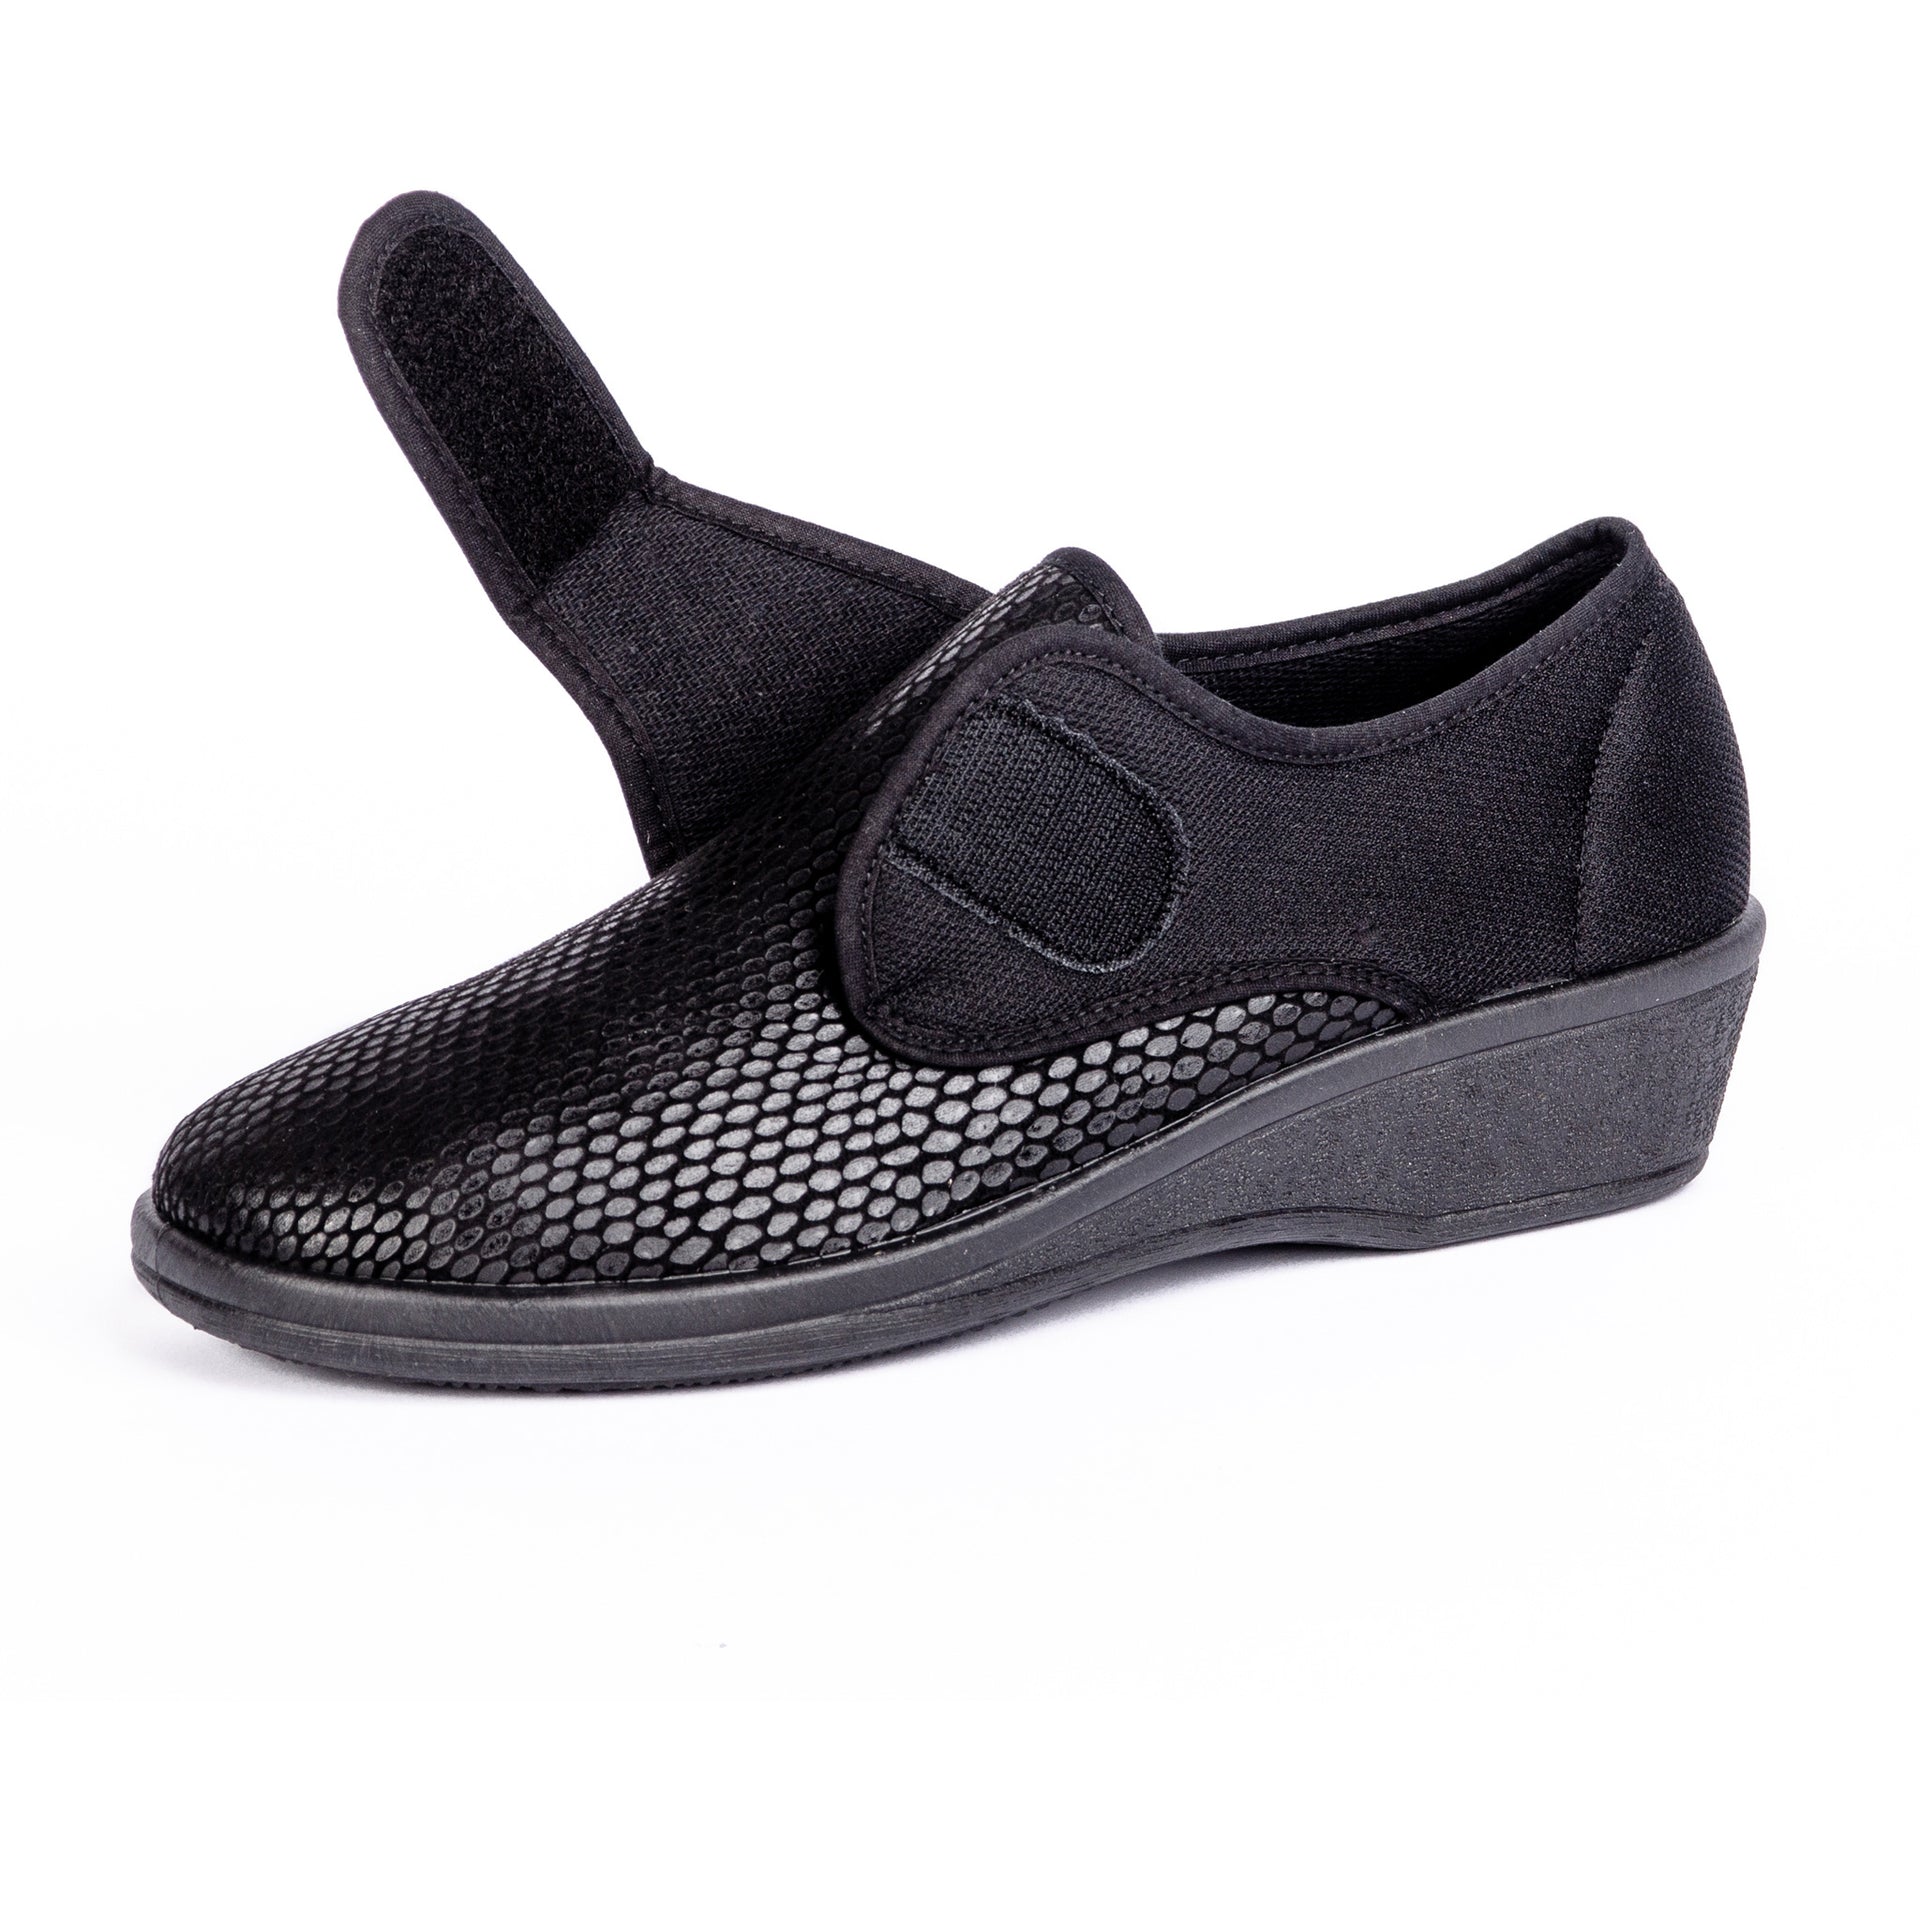 Chaussures Et Pantoufles Orthopédiques 2 En 1 Élastiques Ajustables Noires Vue En Position Ouvertes